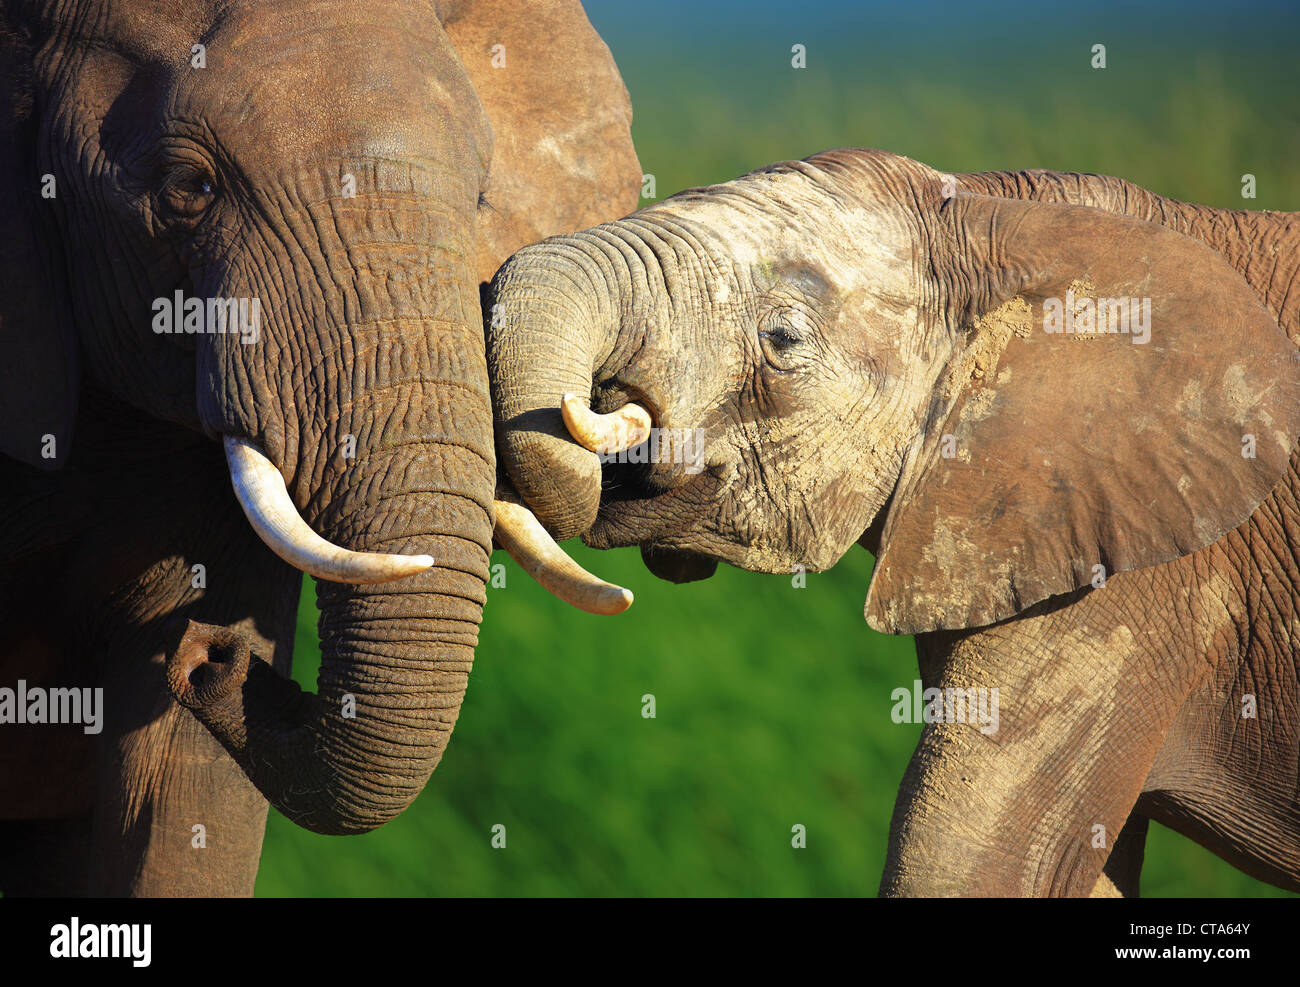 Les éléphants se touchant doucement - Addo National Park - Afrique du Sud Banque D'Images